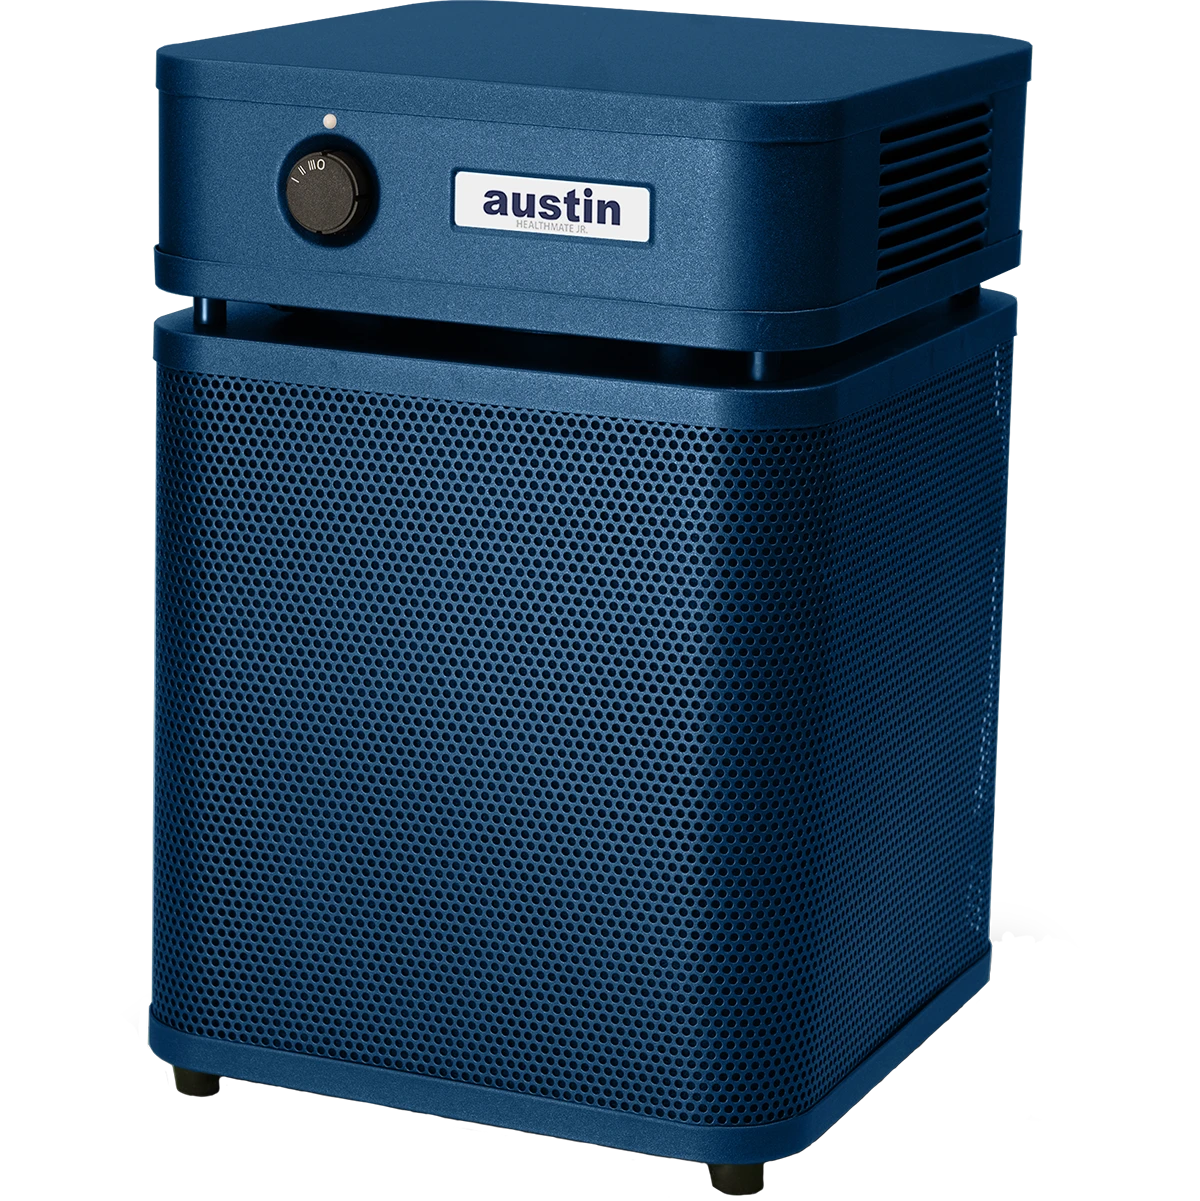 Austin Air Healthmate Junior Air Purifier(HM200)